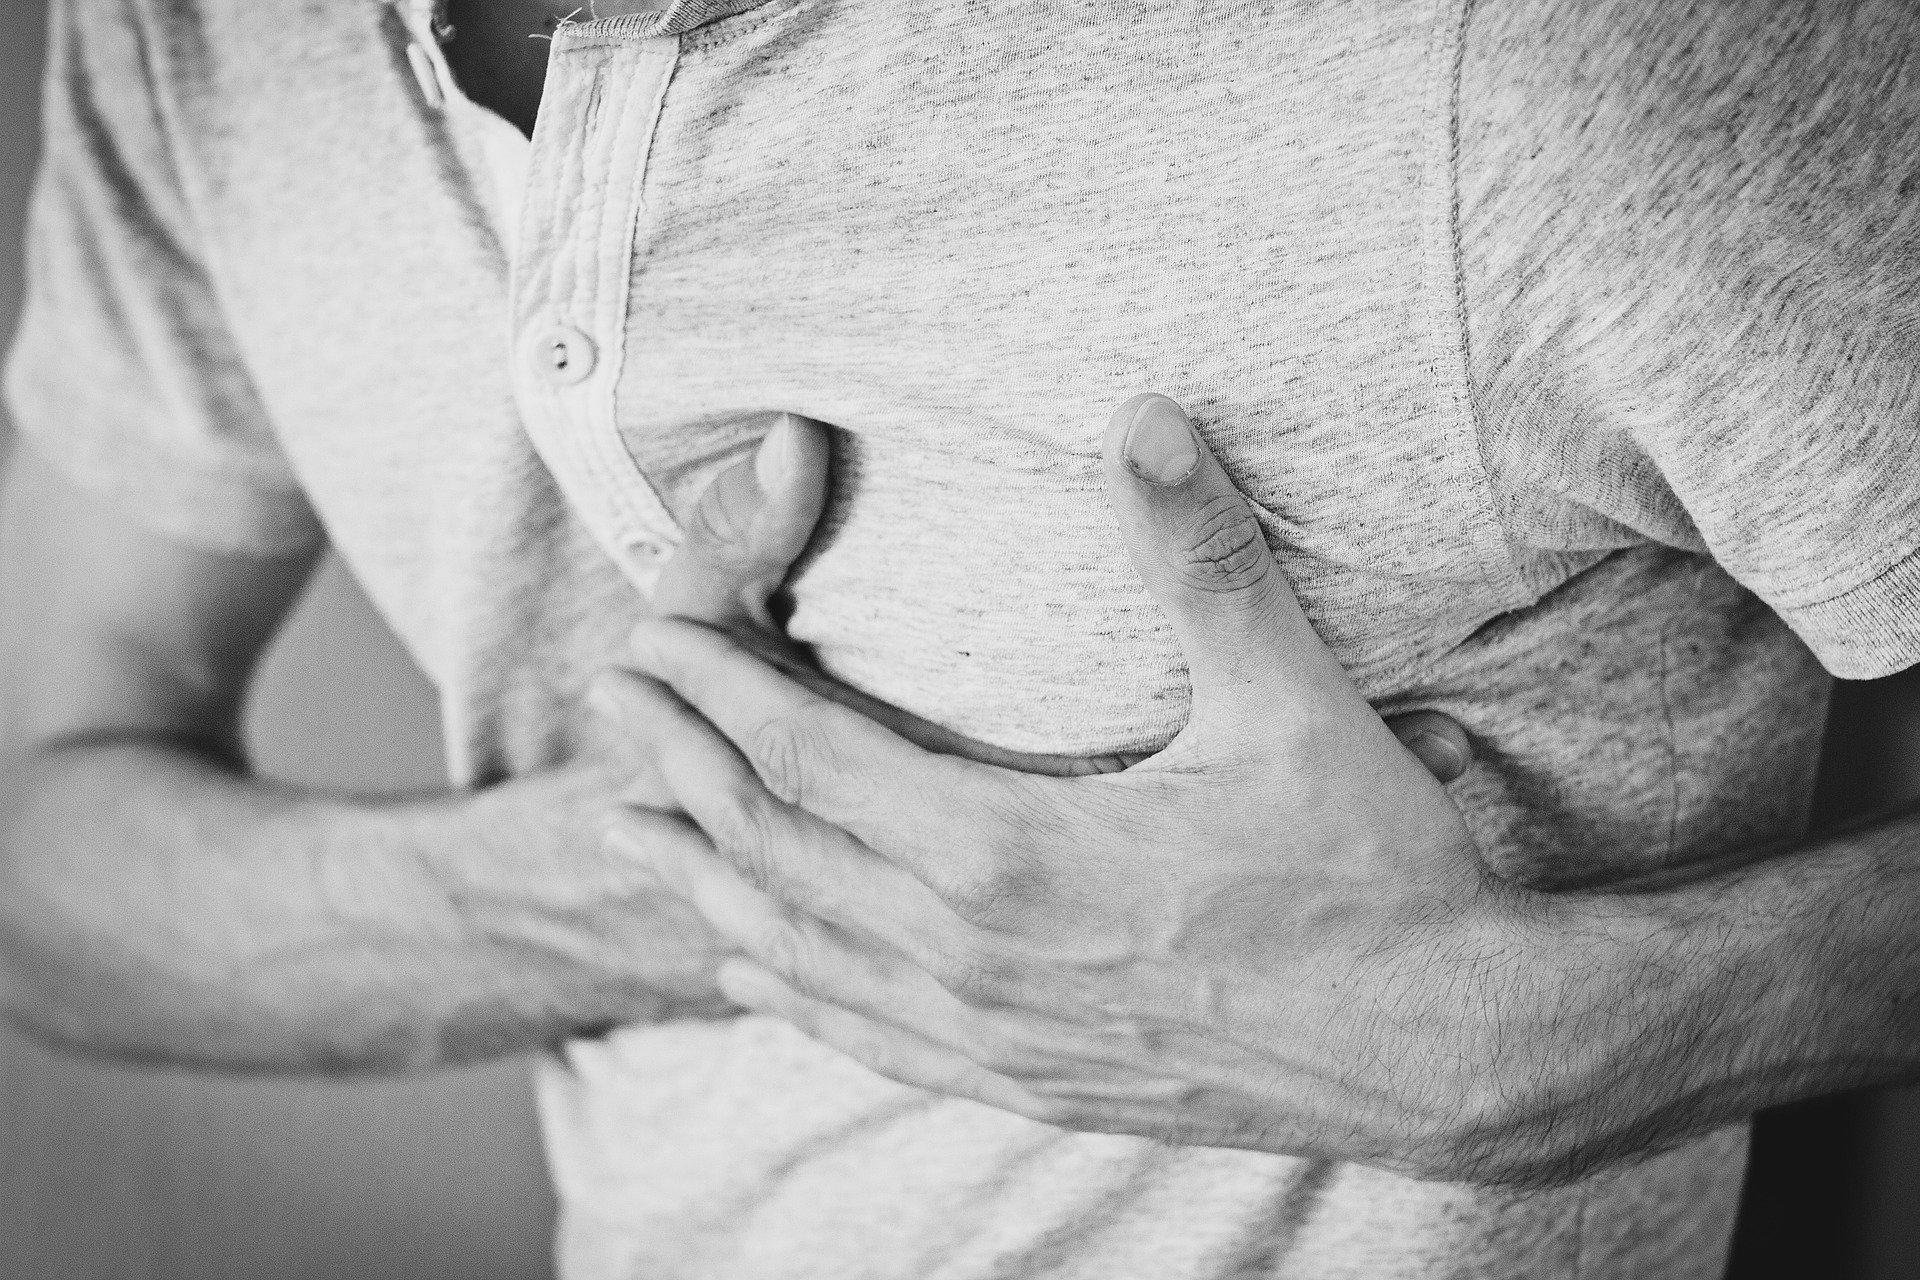 Dor no peito pode ser um sintoma de doenças cardiovasculares (Fonte: Pixabay/Pexels)